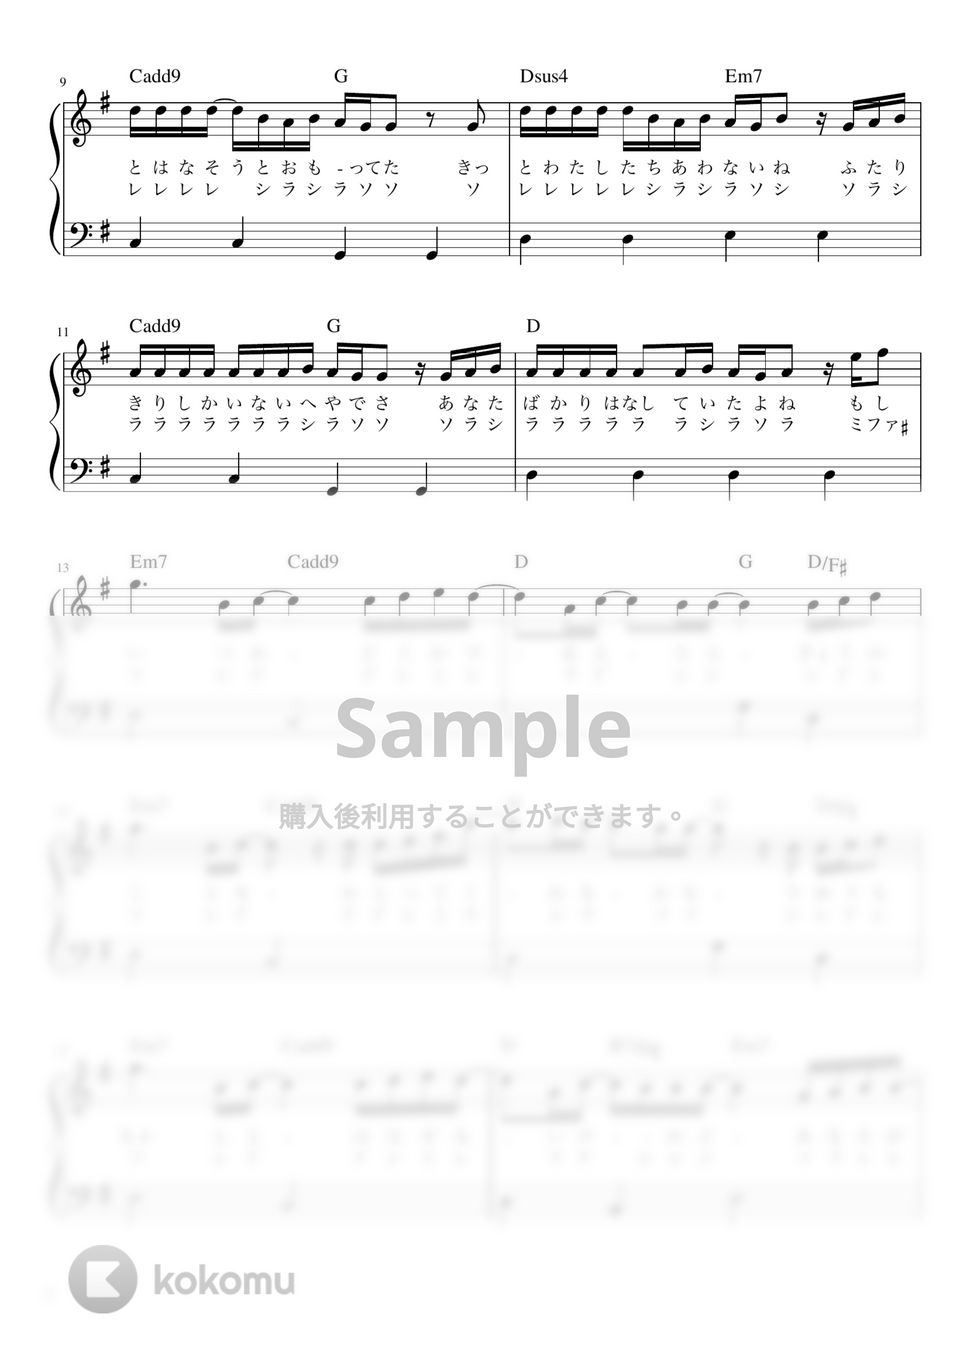 優里 - ドライフラワー (ピアノ かんたん 歌詞付き ドレミ付き 初心者) by piano.tokyo